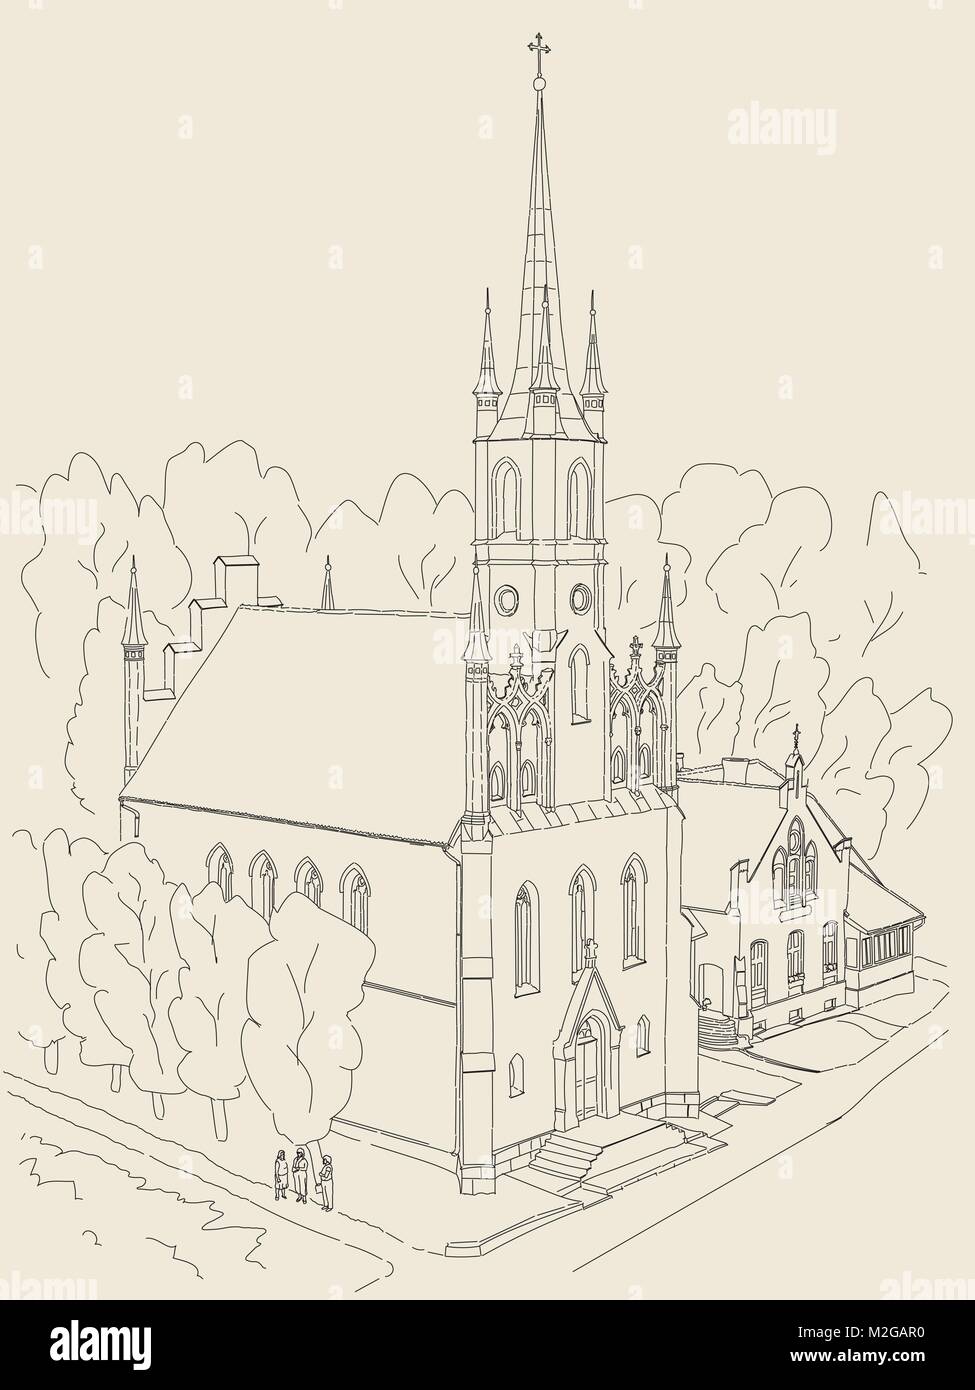 Schwarz und Weiß Skizze von der Kathedrale im gotischen Stil. In der kleinen gemütlichen Stadt in Europa. Stock Vektor